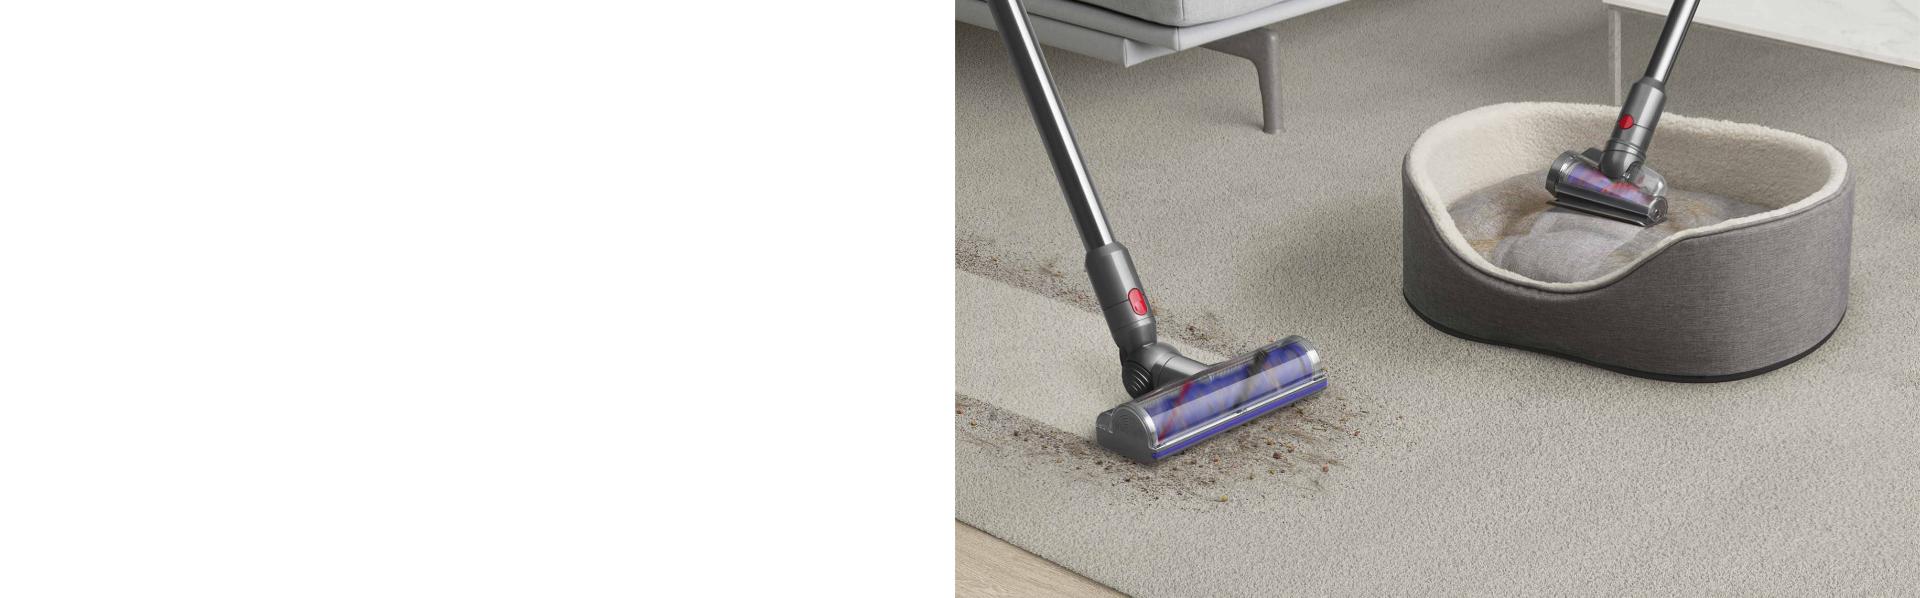 智能電動吸頭正在清潔地毯及硬地板